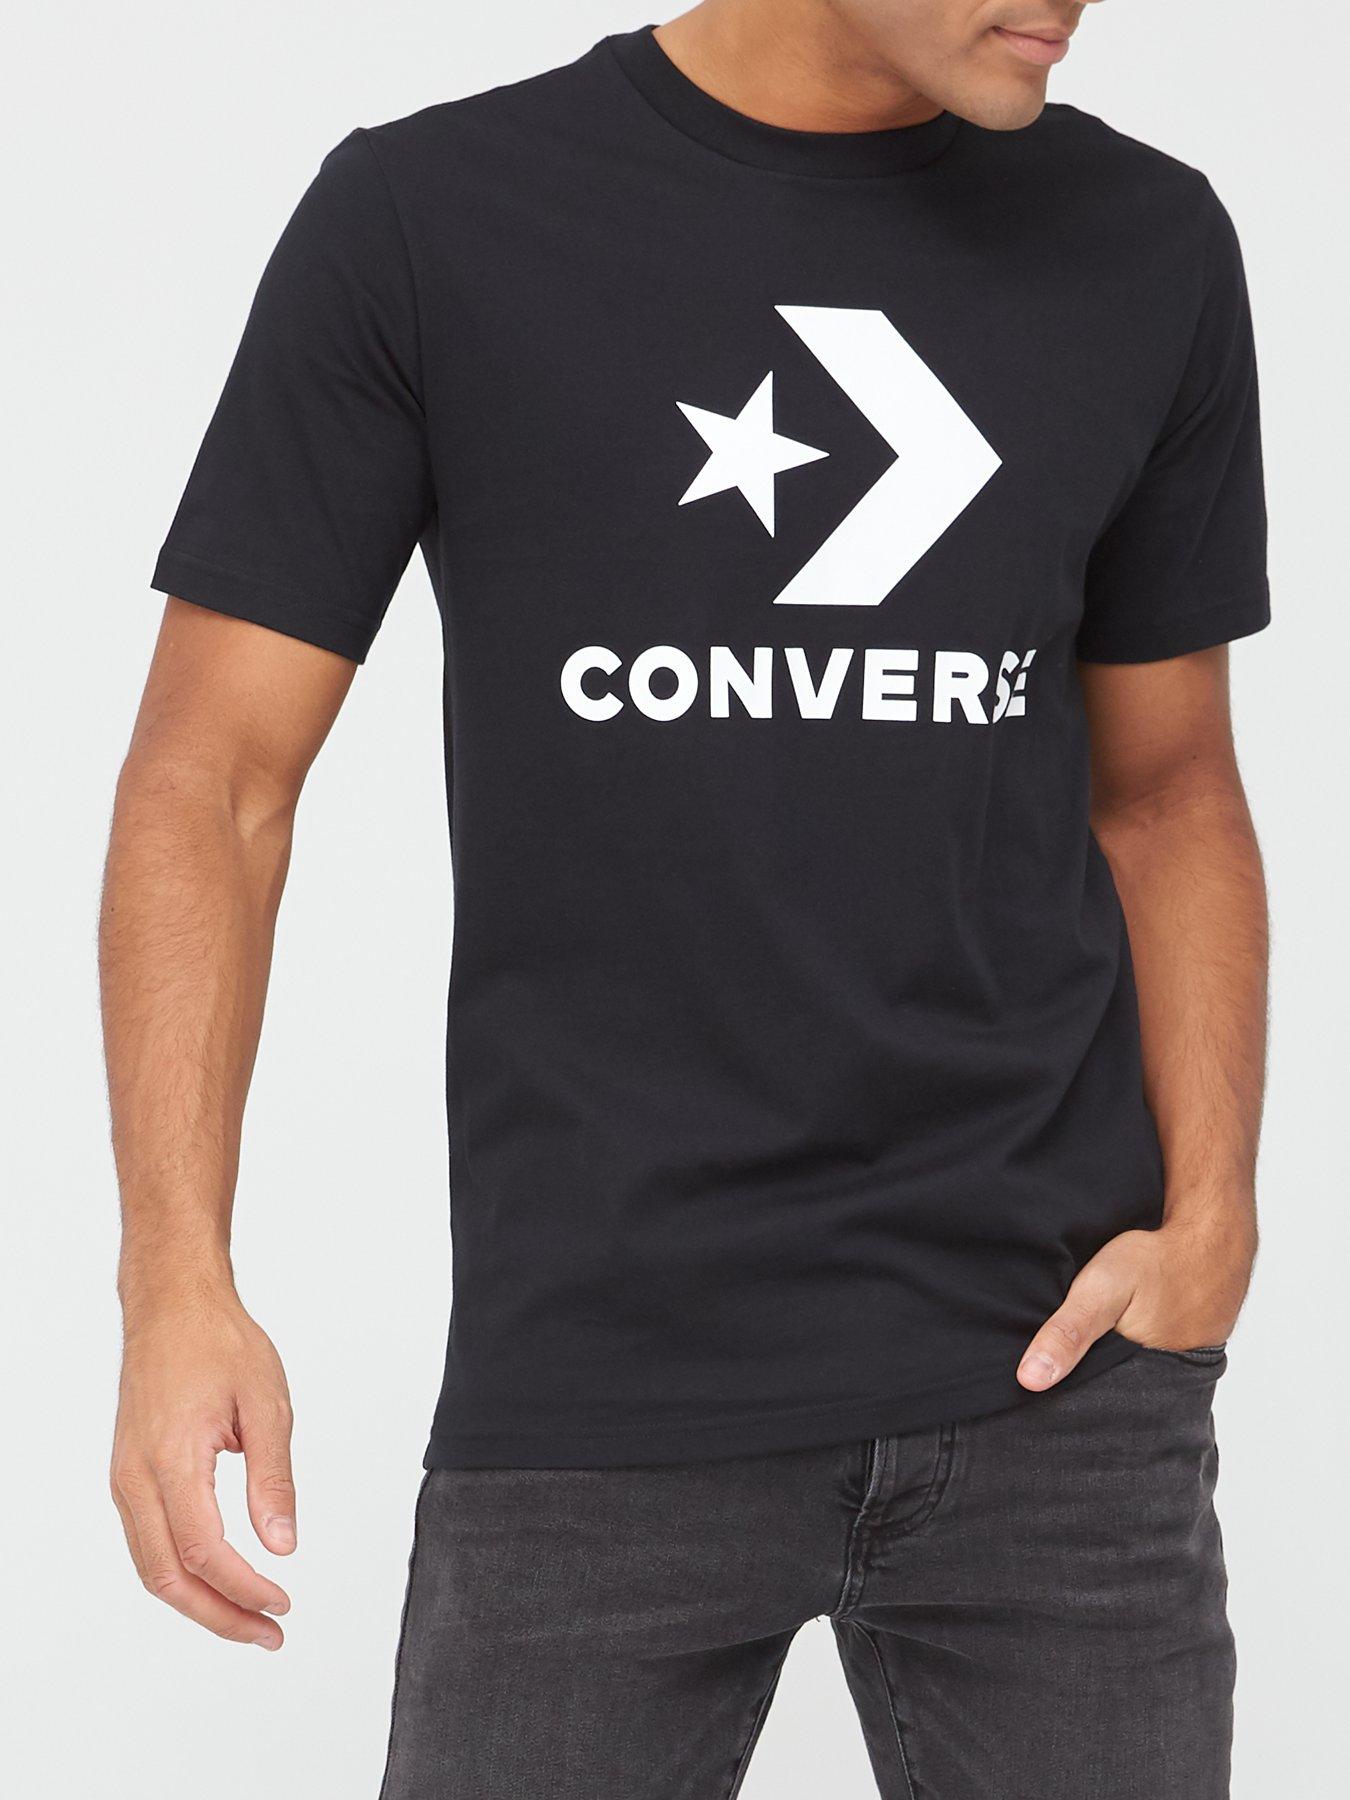 converse t shirts uk